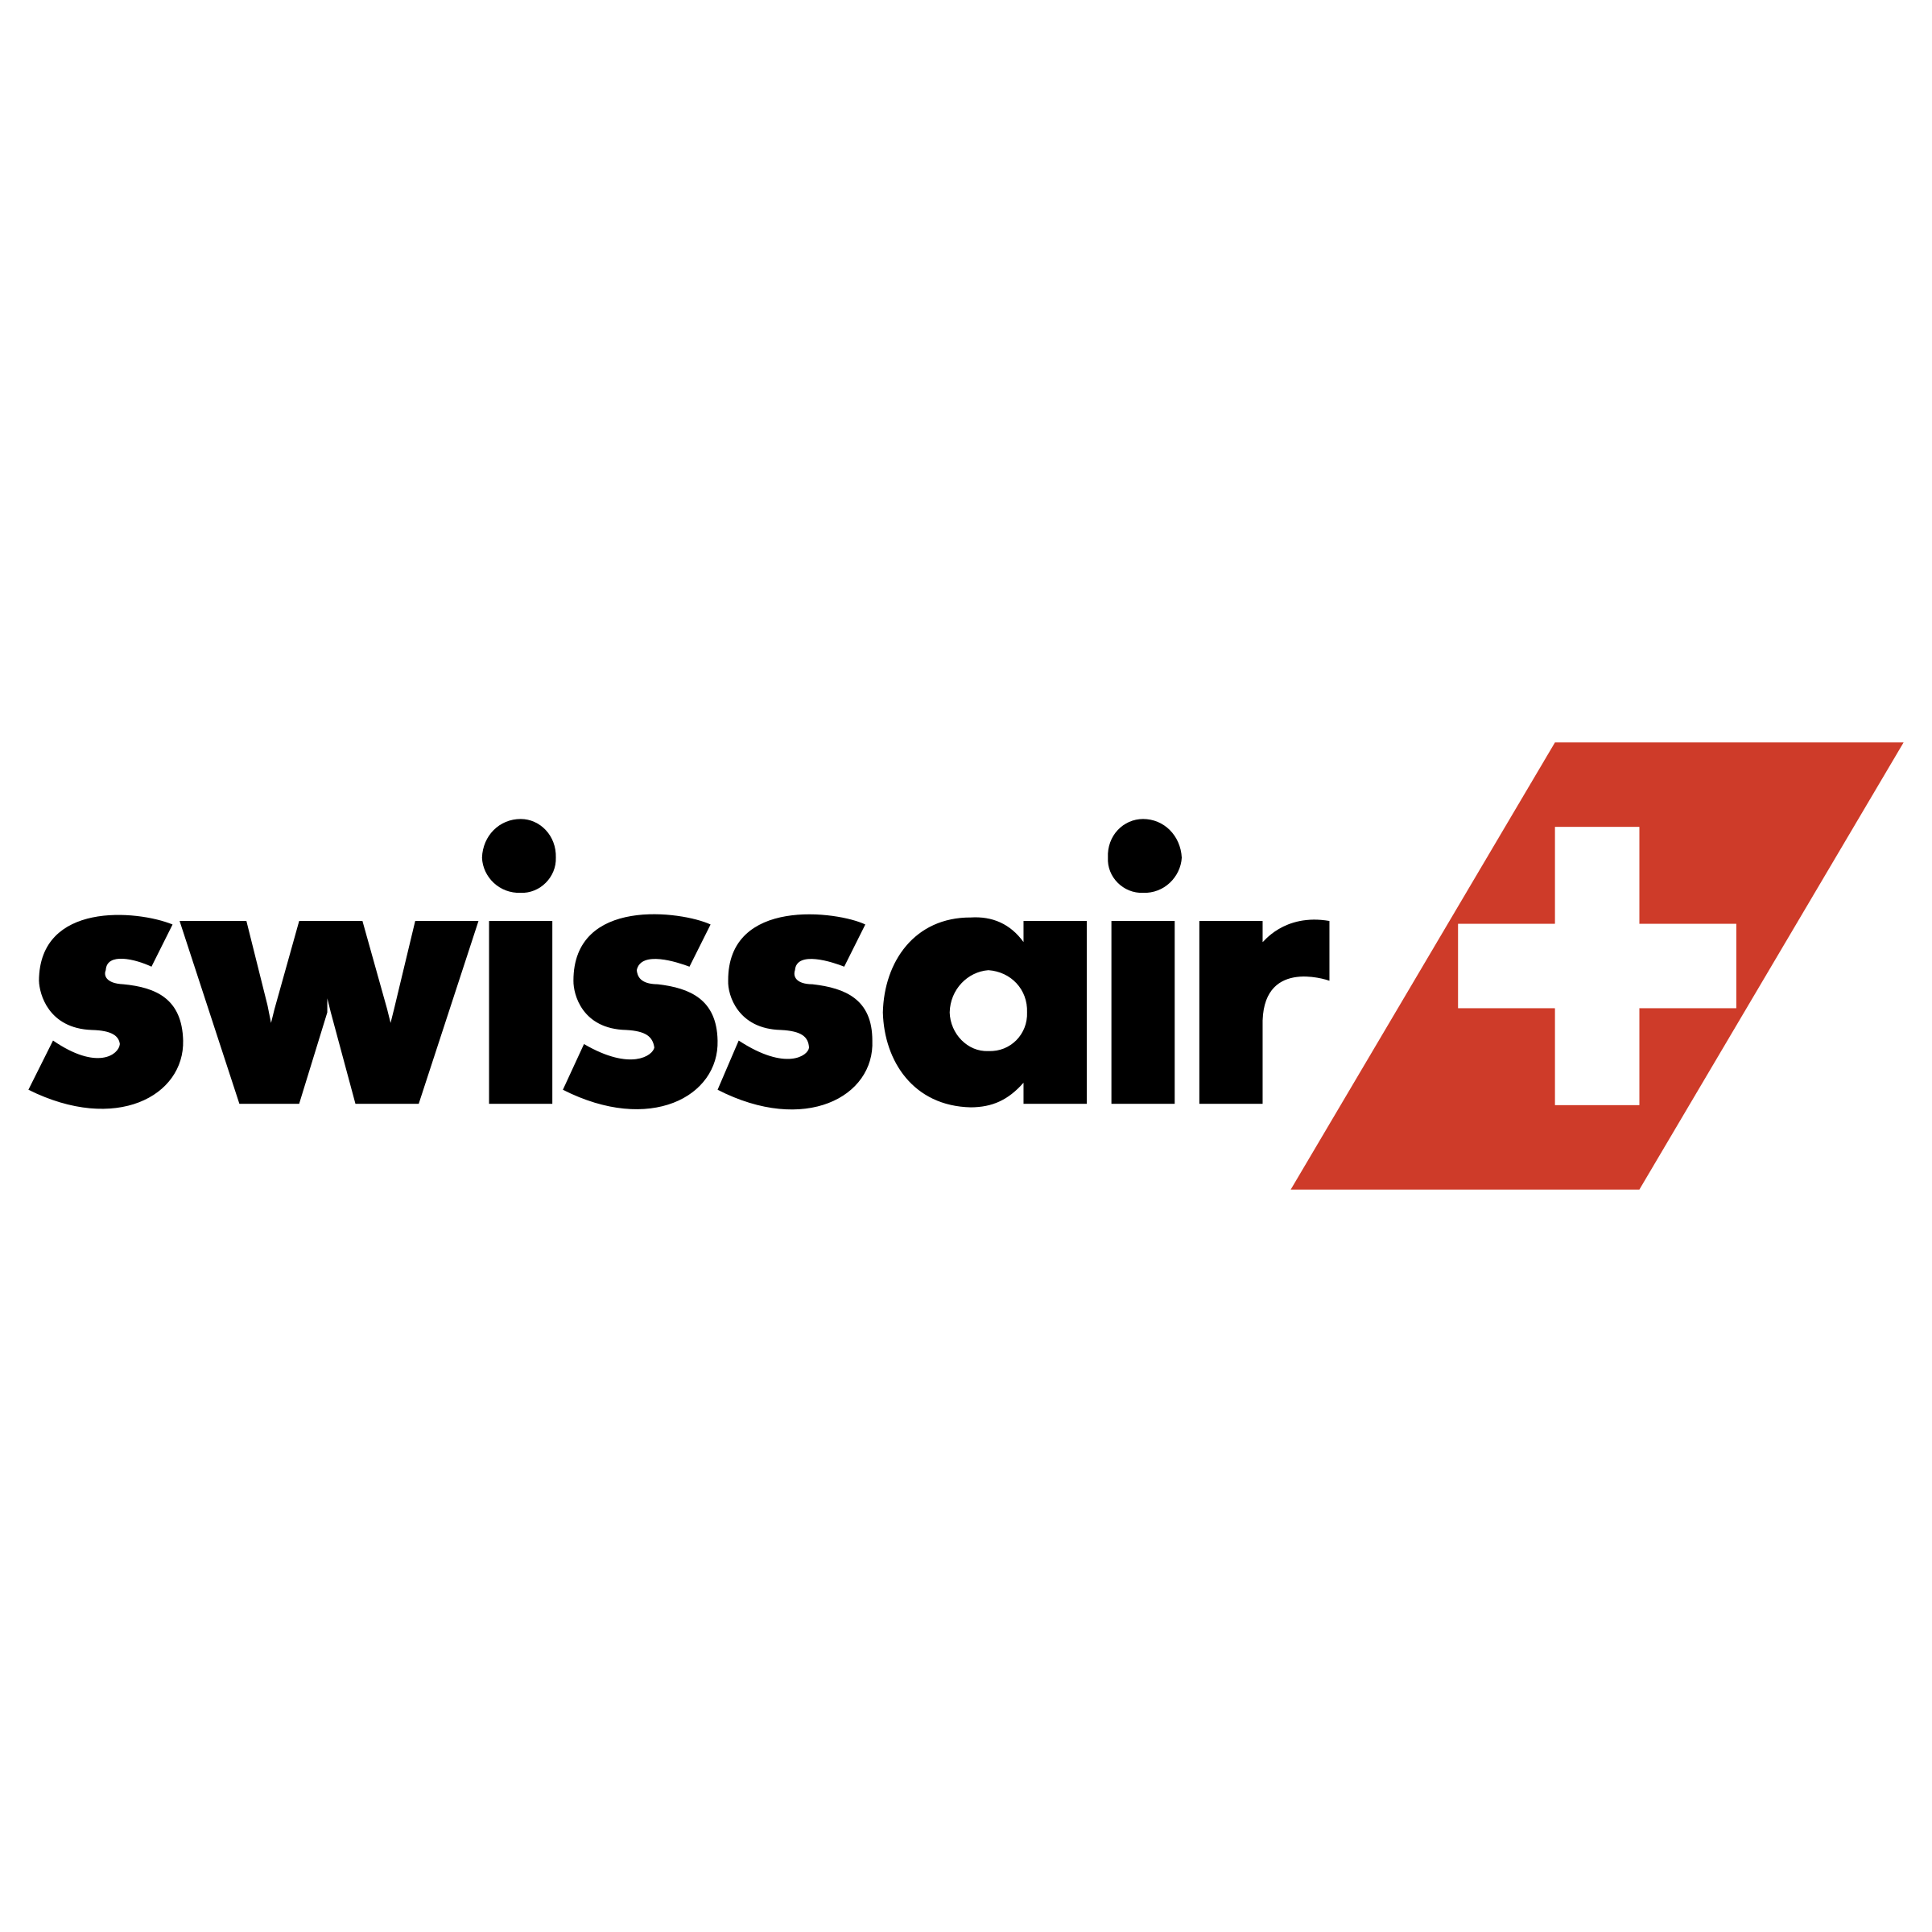 Swiss Air Logo - Swissair Logo PNG Transparent & SVG Vector